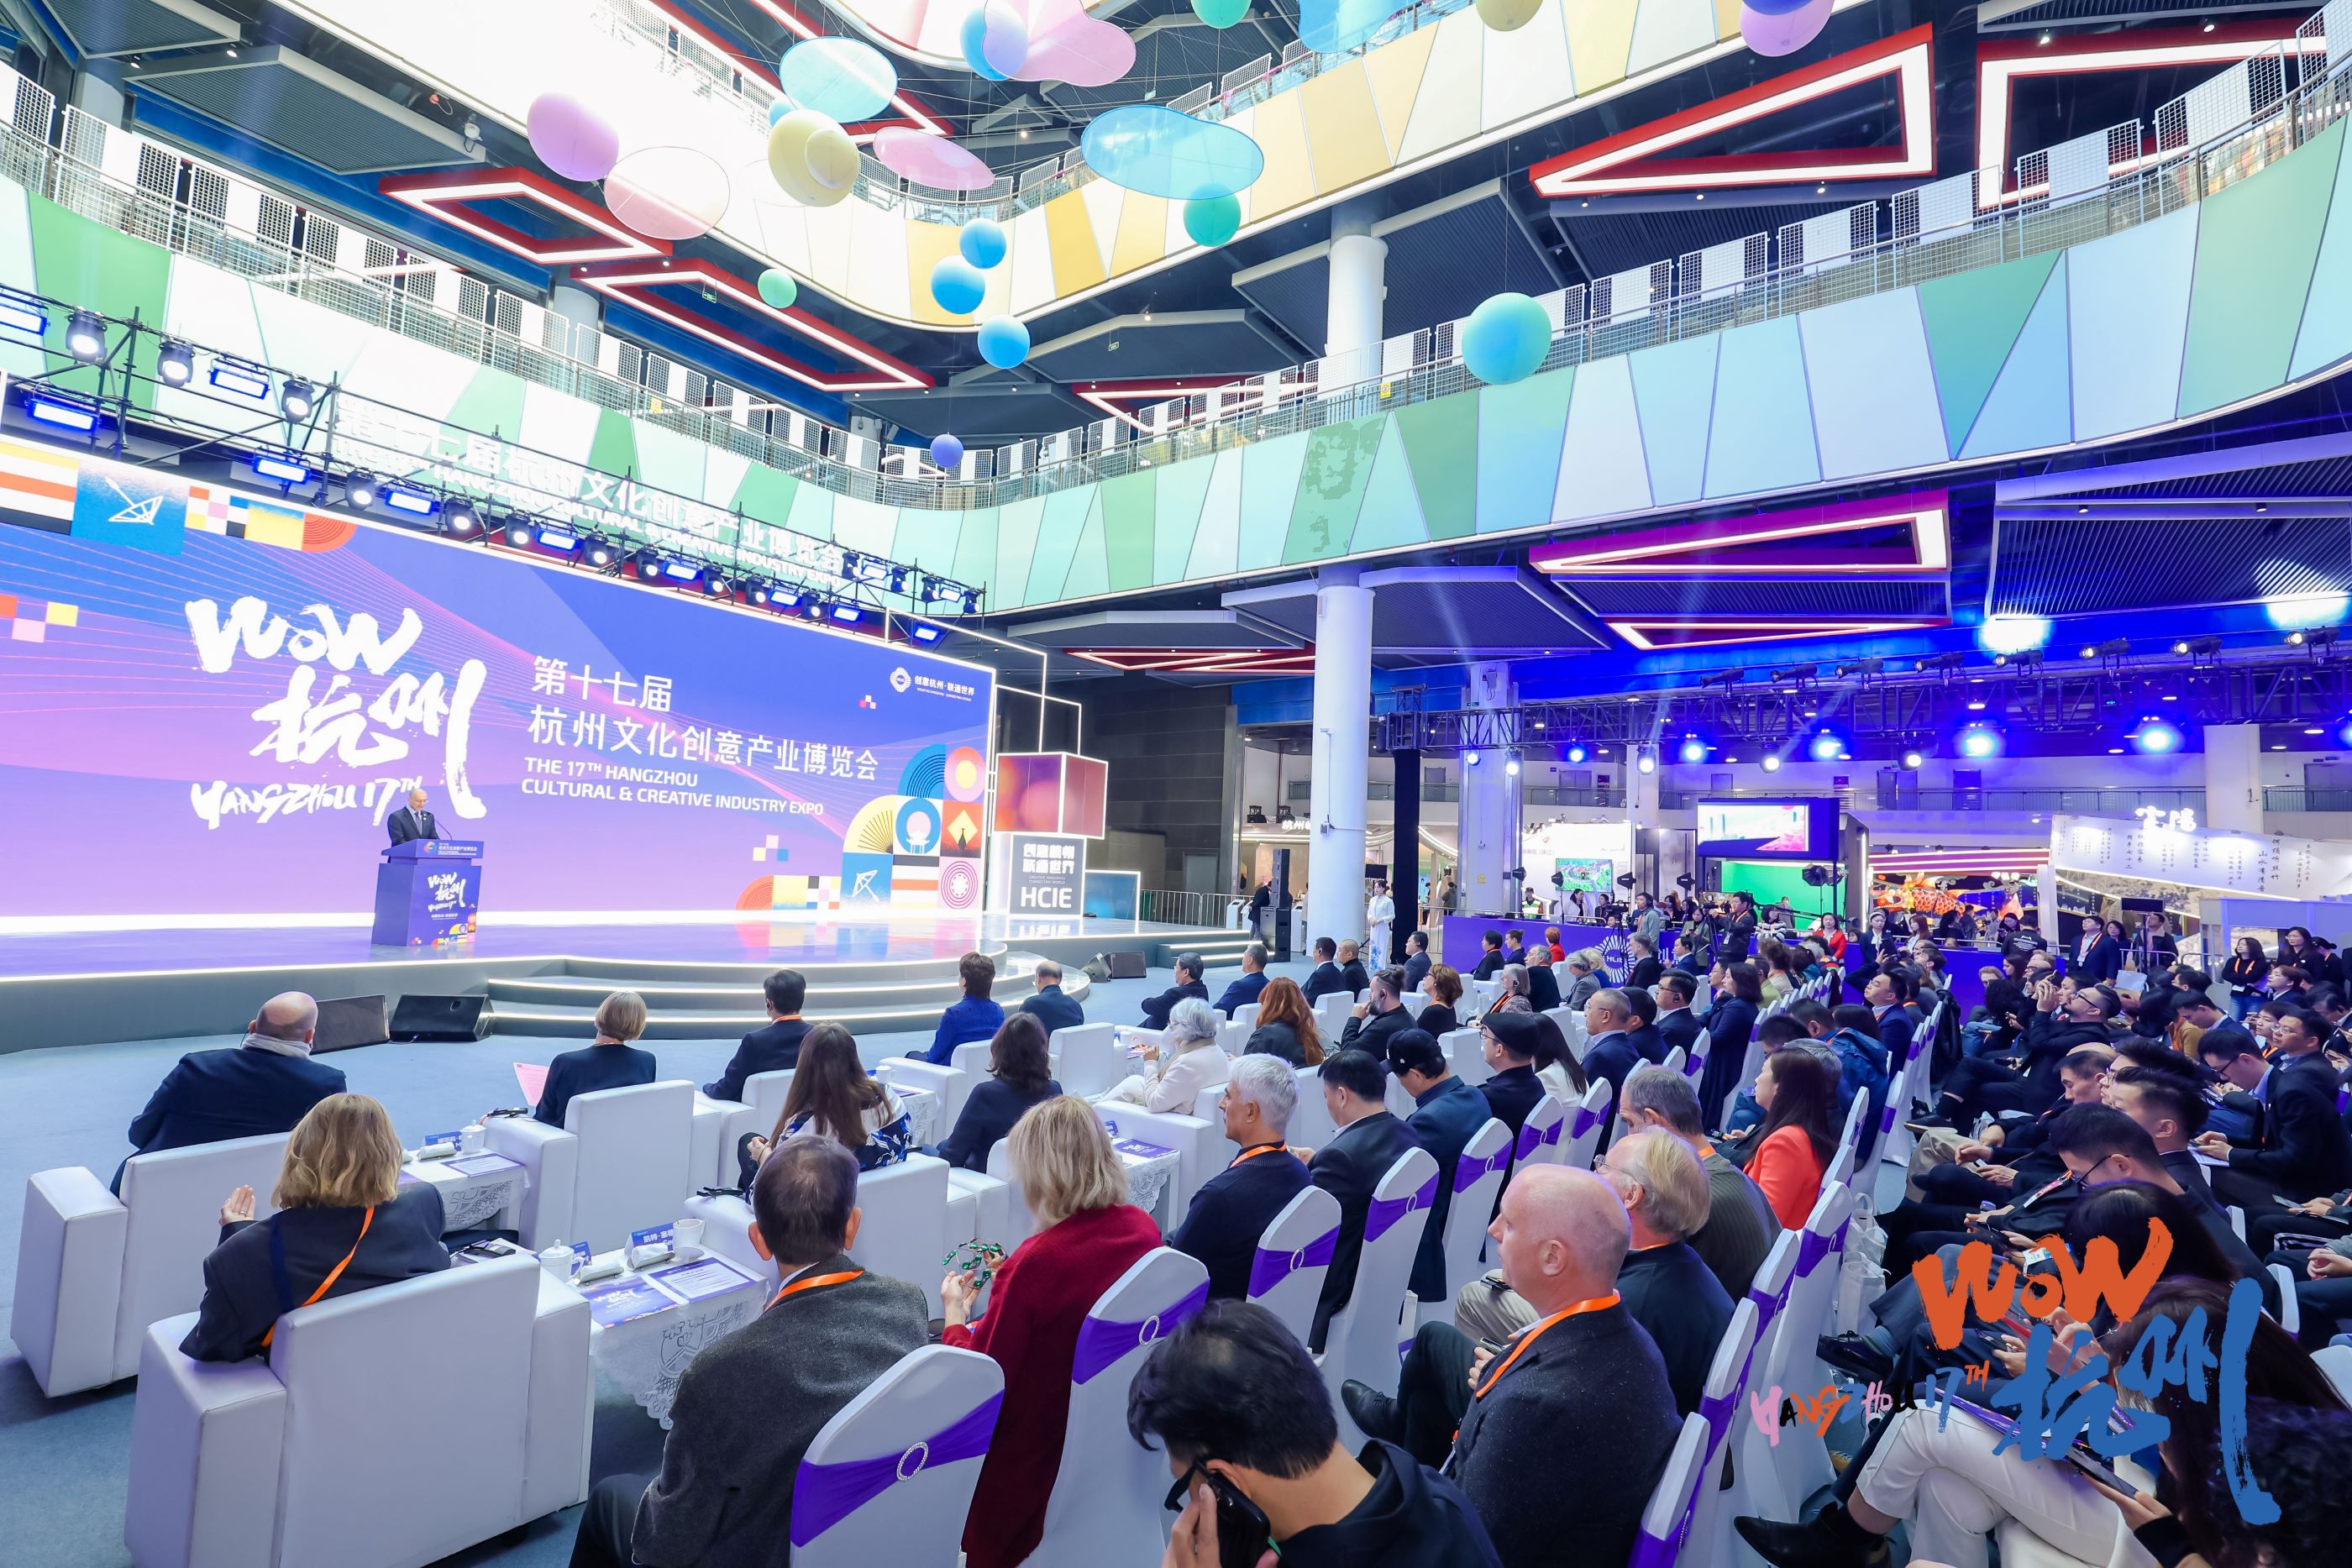 17-о Международно изложение за култура и креативни индустрии в Ханджоу